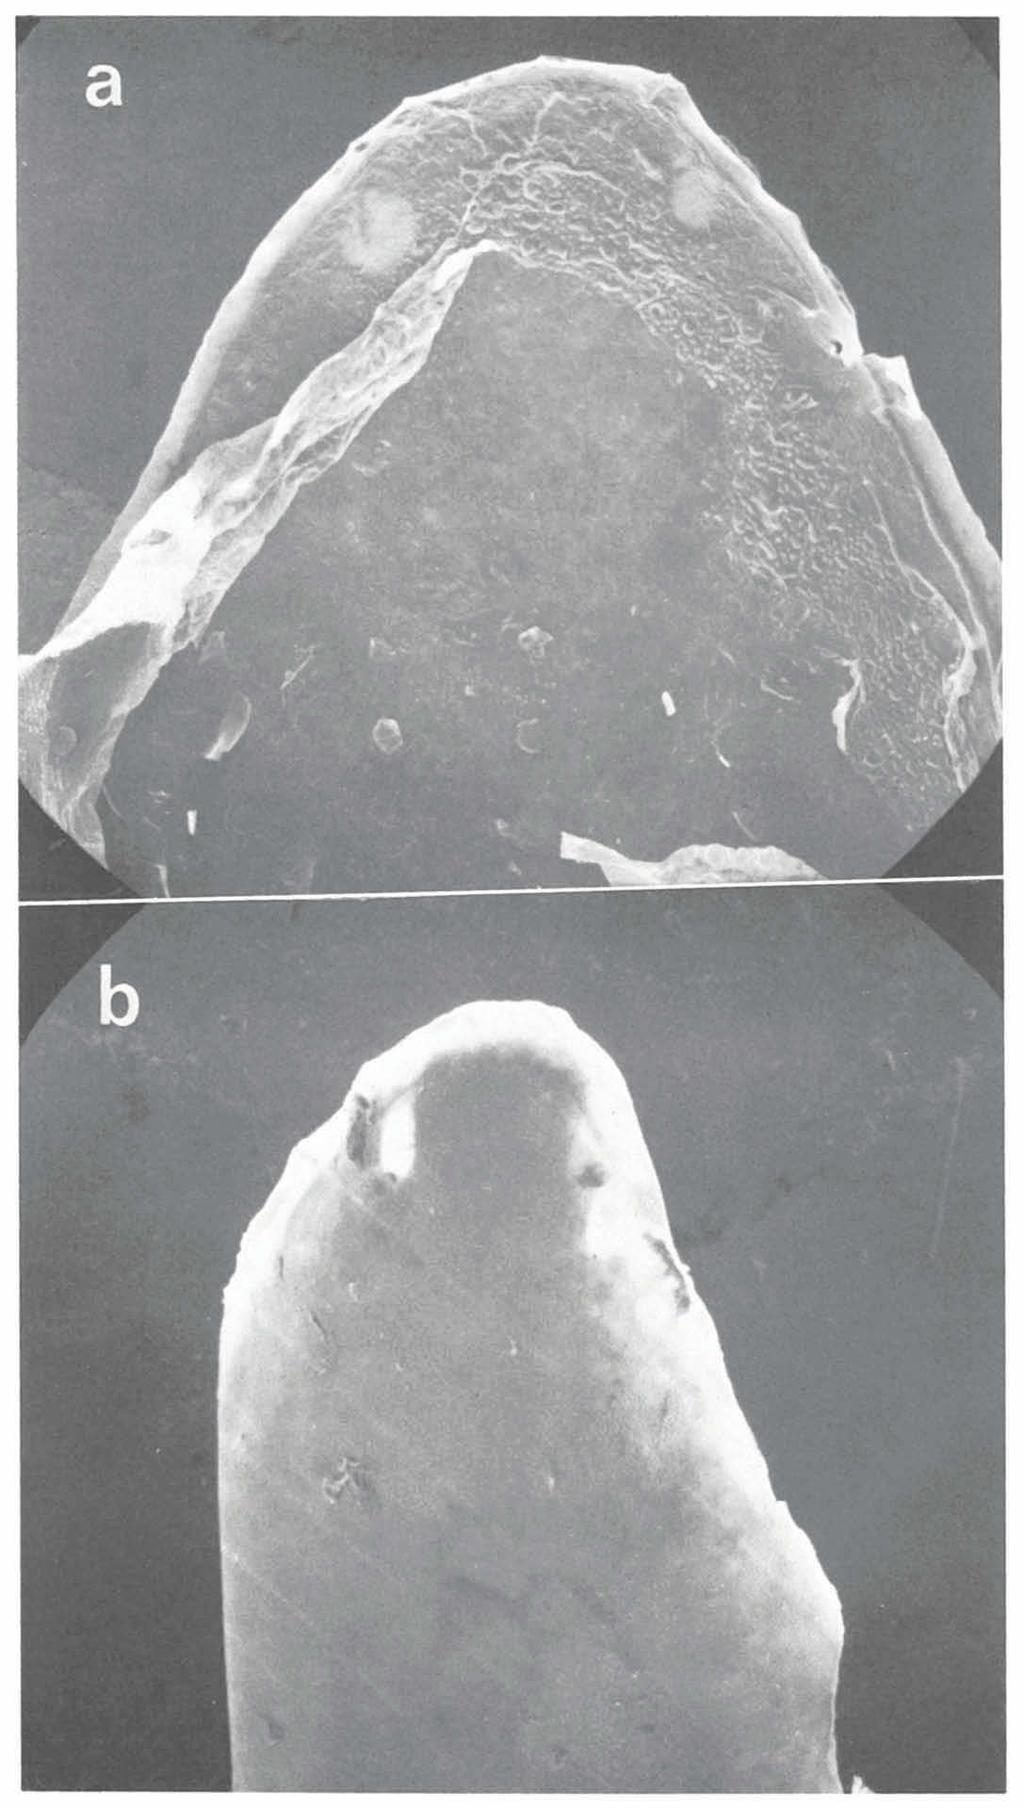 ZOOLOGISCHE VERHANDELINGEN 175 (1980) PL. 5 Actractus zidoki Gasc & Rodrigues, $ RMNH 13781.